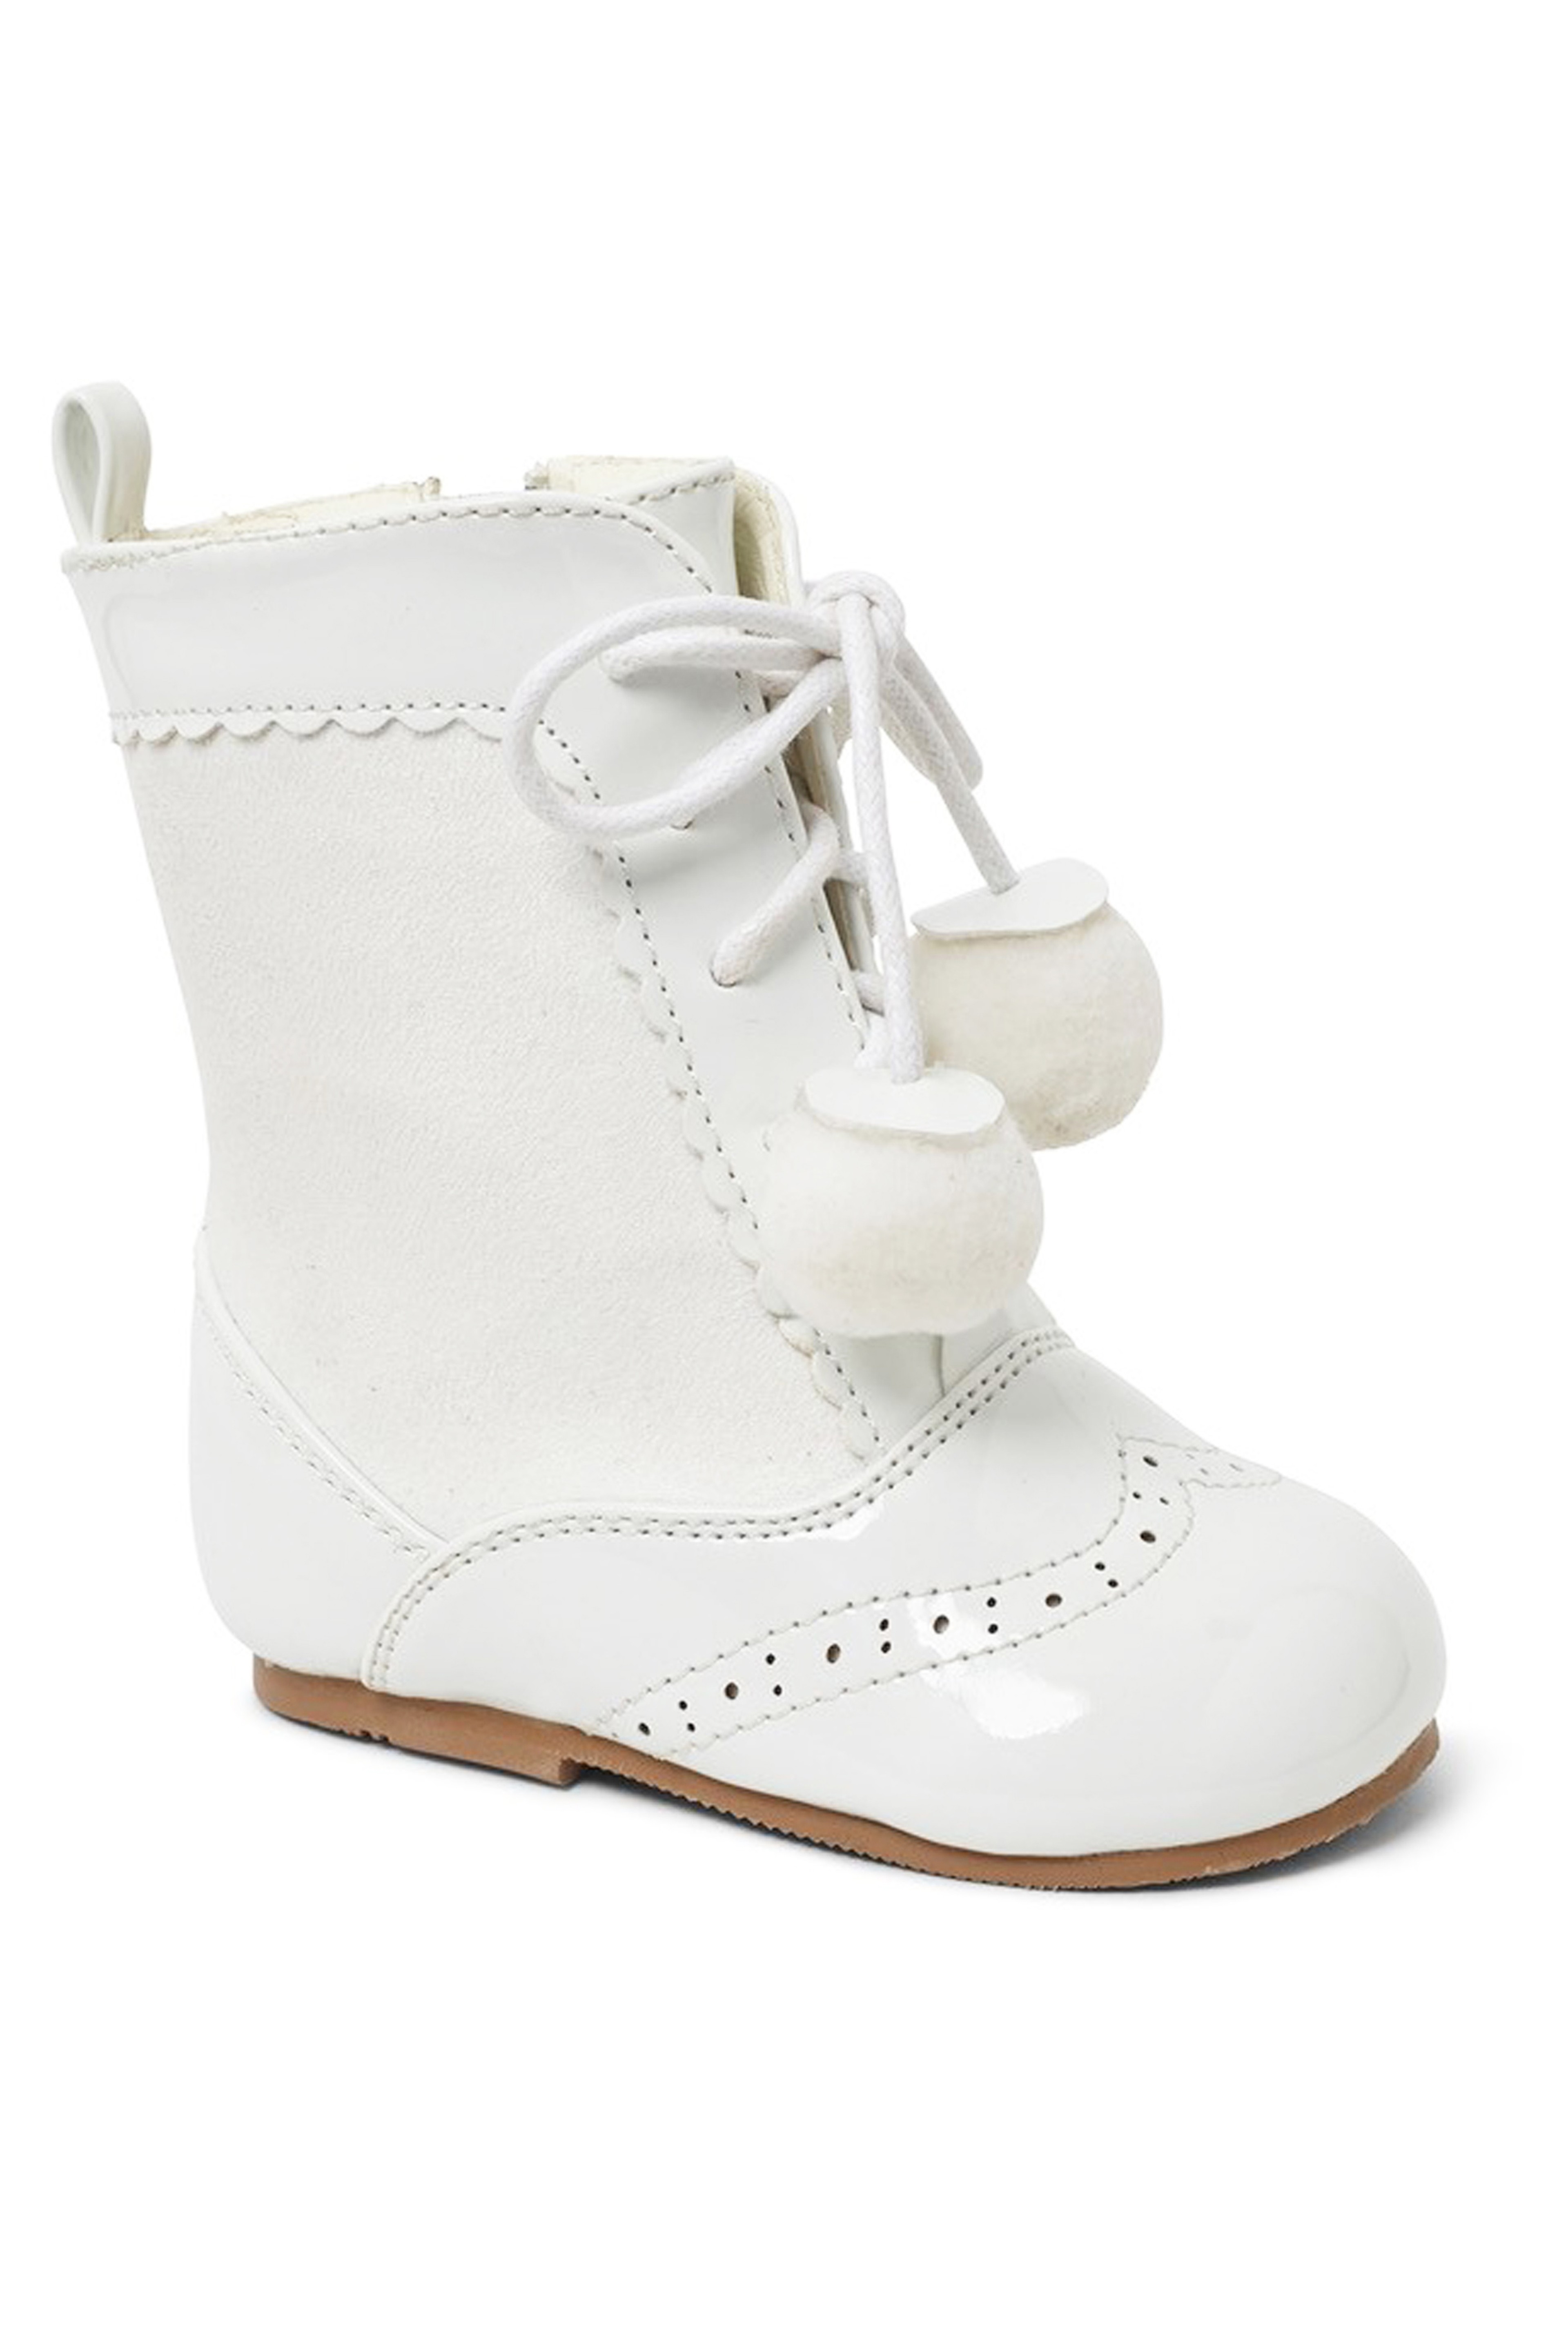 Kinder Lackleder Sienna Brogue Stiefel mit Schnürung und Pom-Pom Details, Unisex Klassische Schuhe